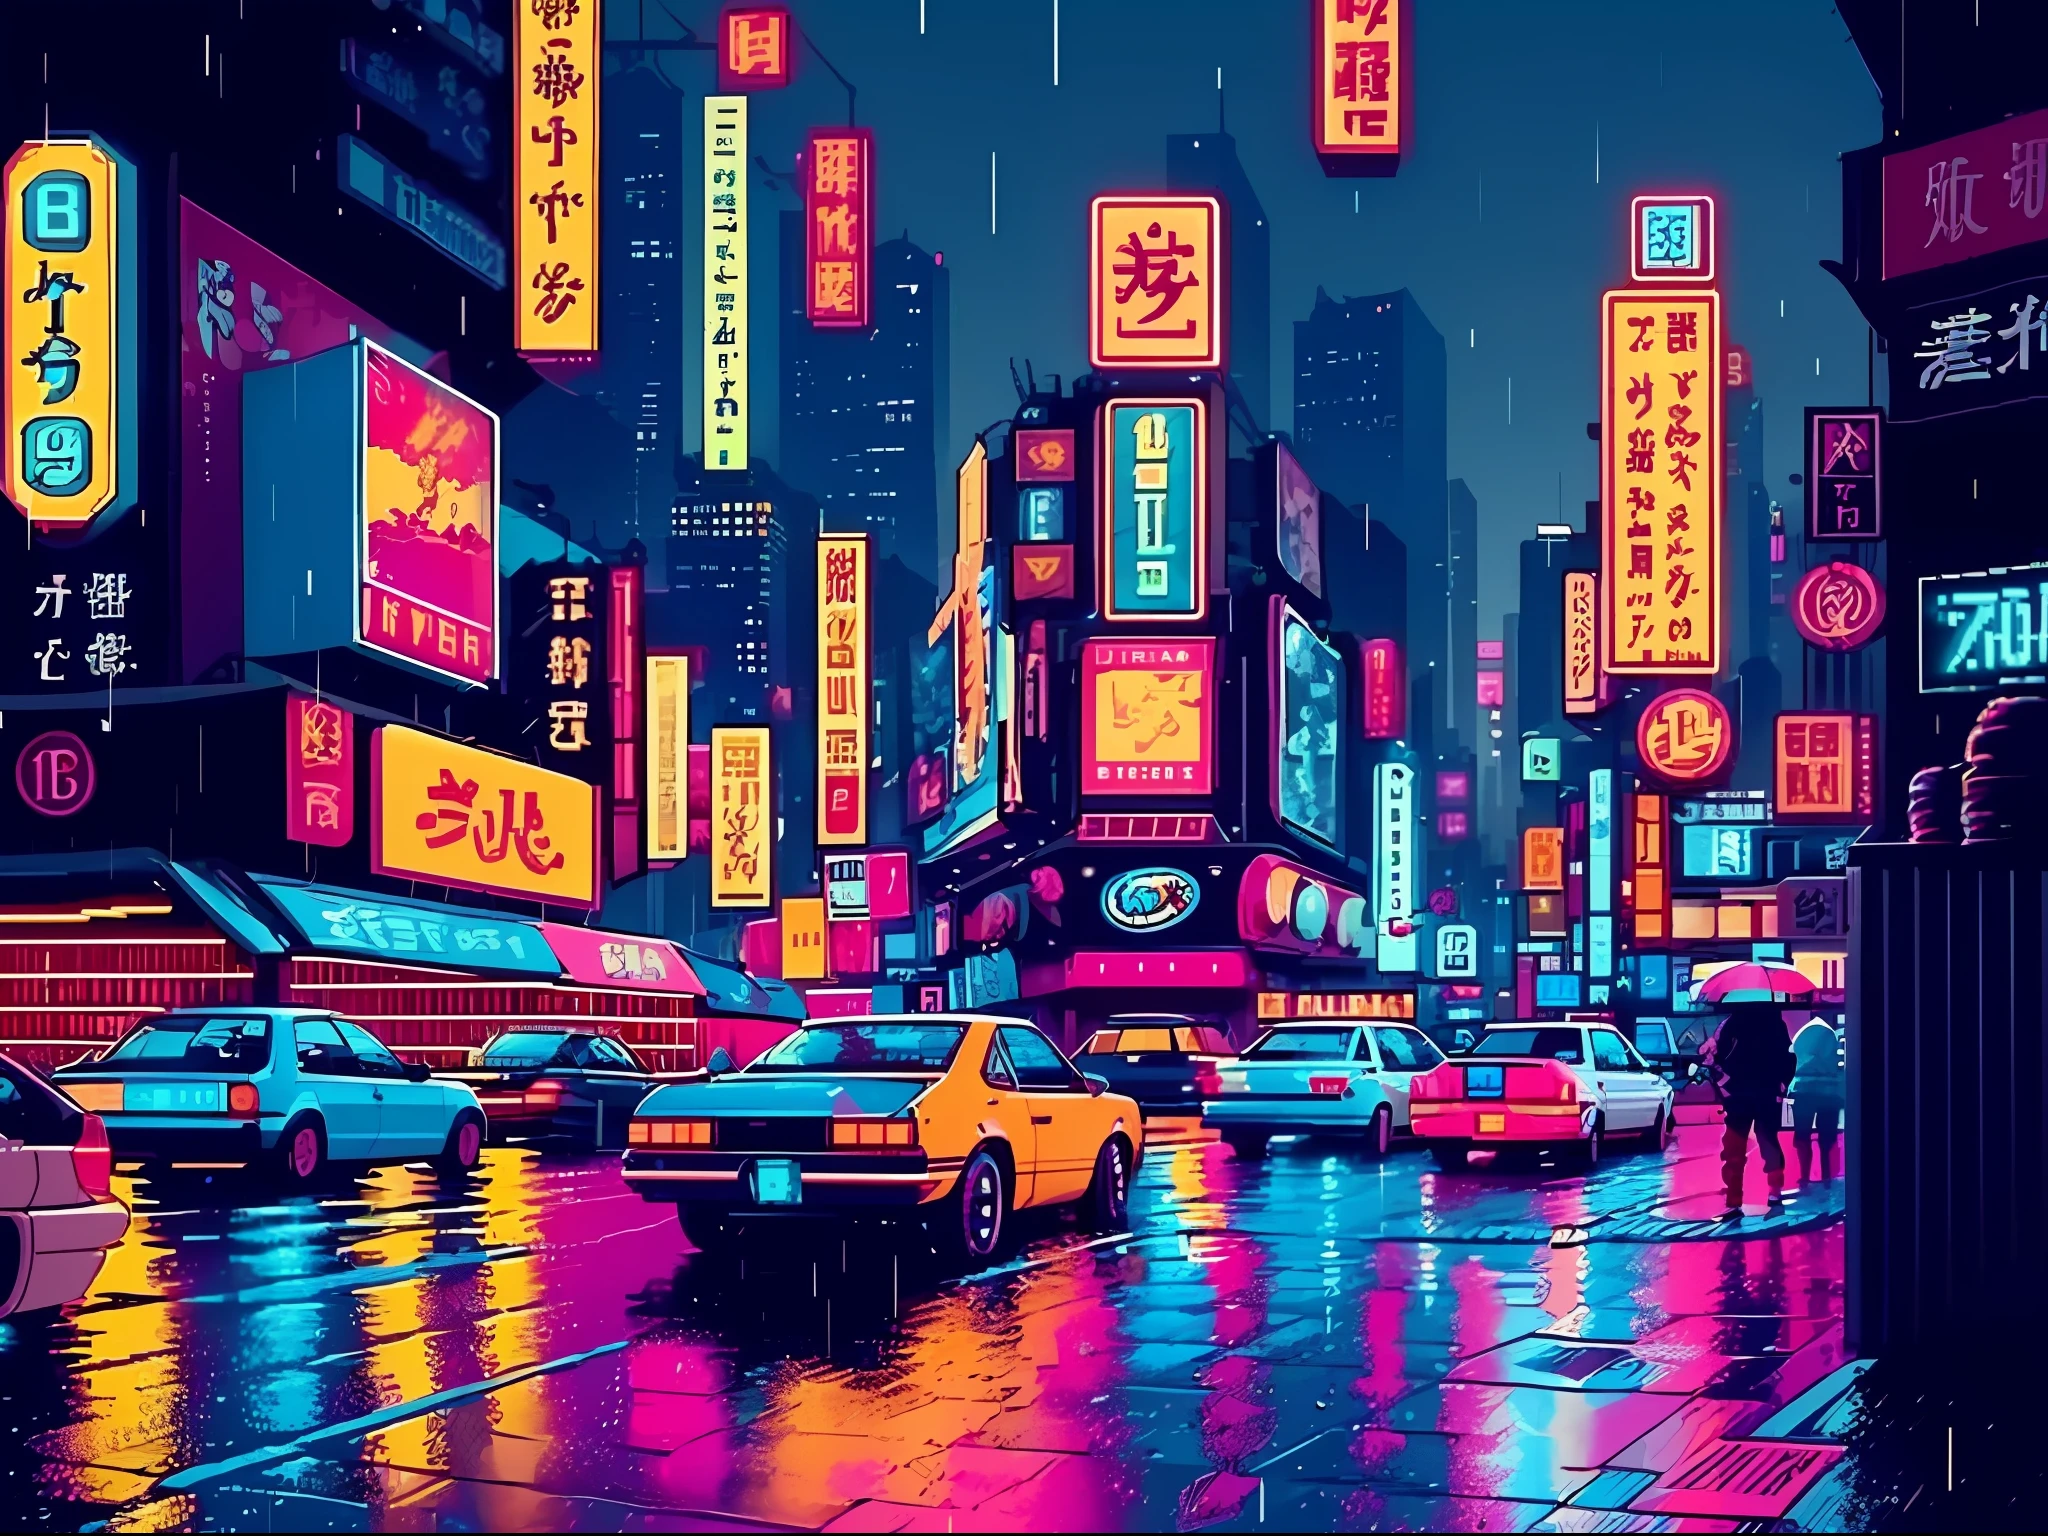 (Bokeh-Effekt), (dynamischer Winkel), ((Meisterwerk)), (Straßen von Tokio), (zebracross), (regnet), (Nacht), leere Stadt, dunkel, (Neon), Pixel Kunst, ((verpixelt)), cyberpunk, ((16 Bit)), (Retro)